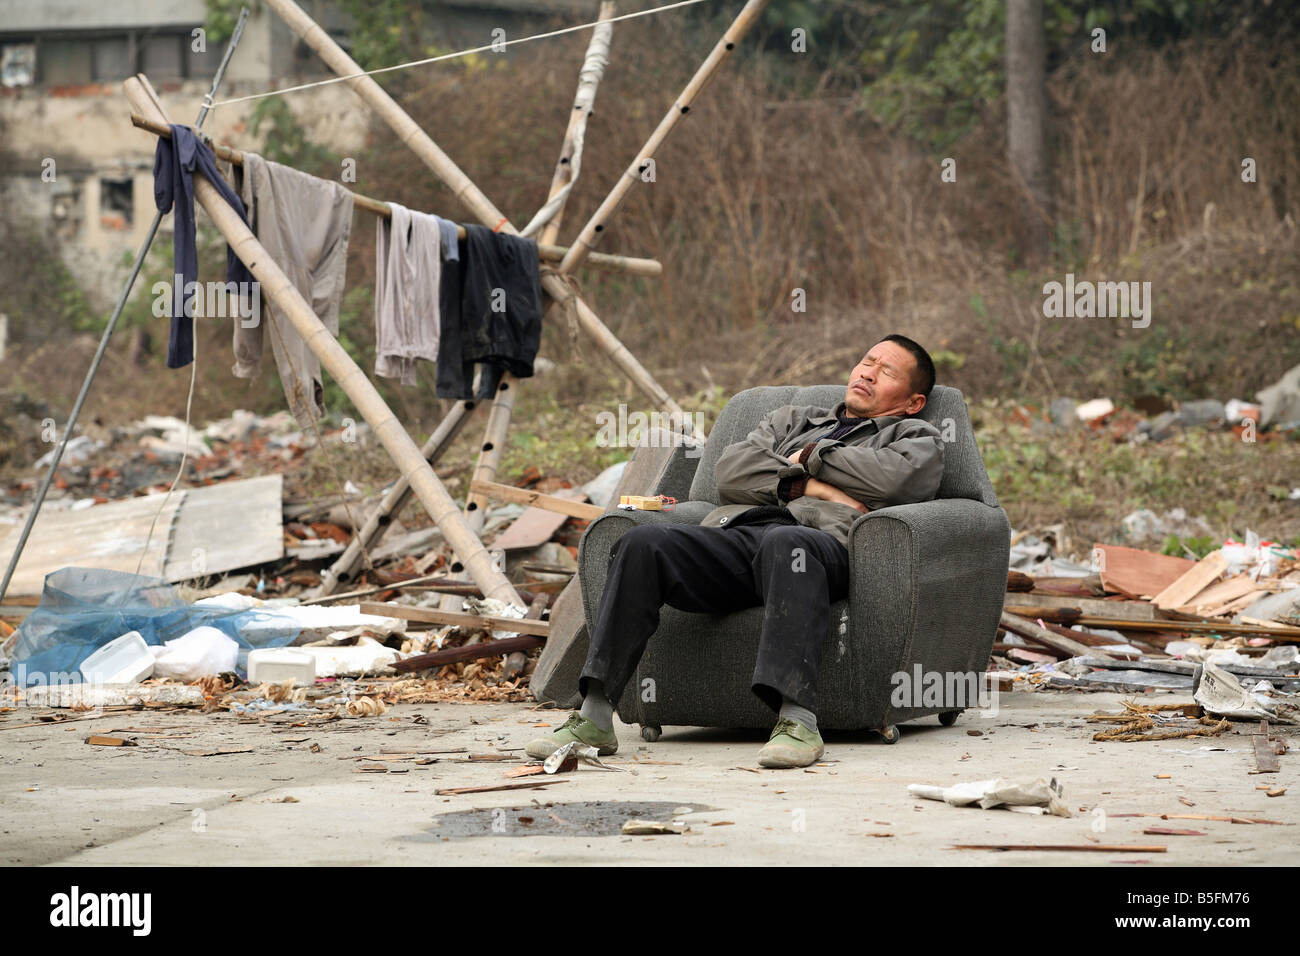 Un homme asiatique dormir dans une chaise, Suzhou, Chine Banque D'Images